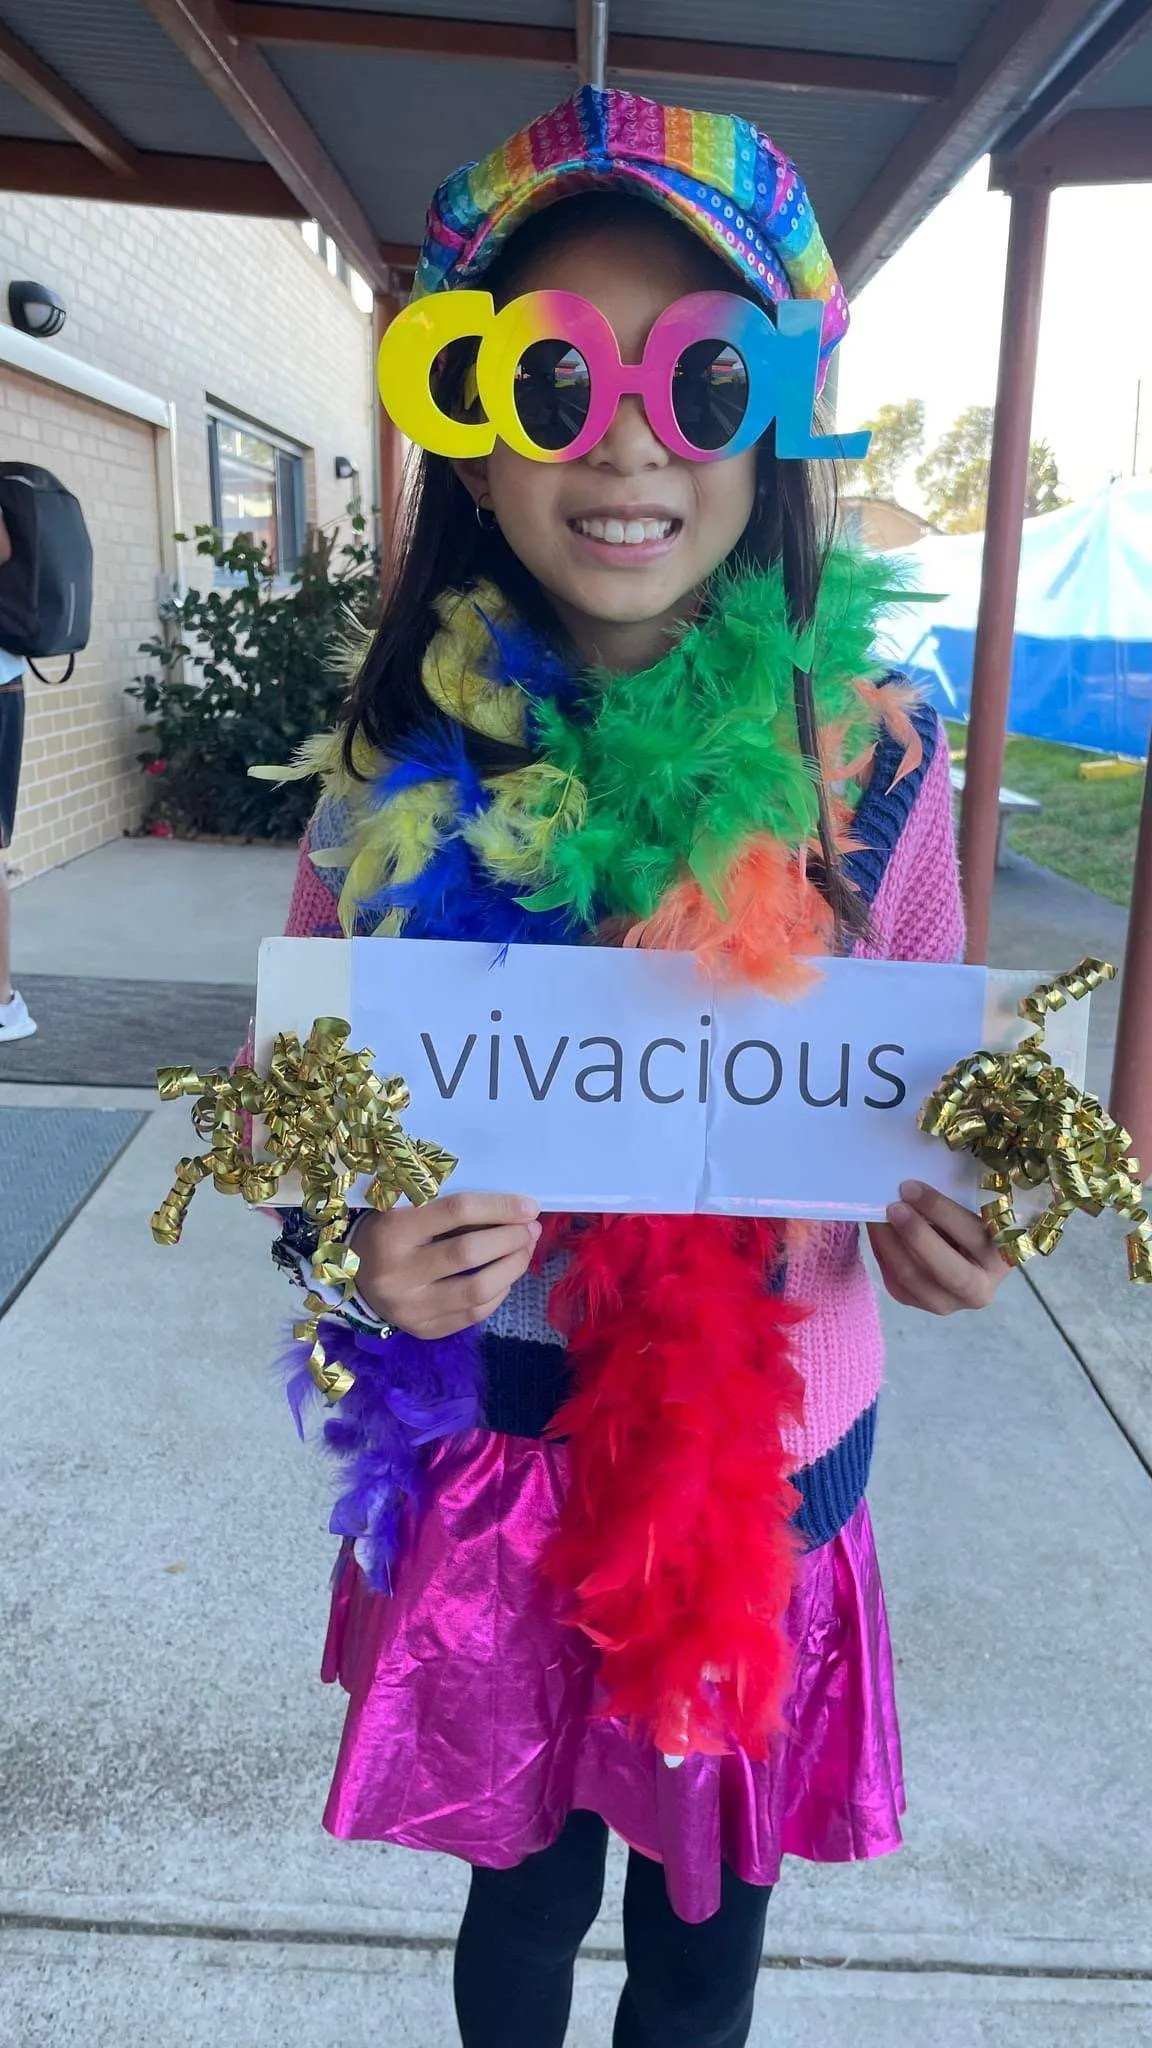 vocabulary parade: vivacious